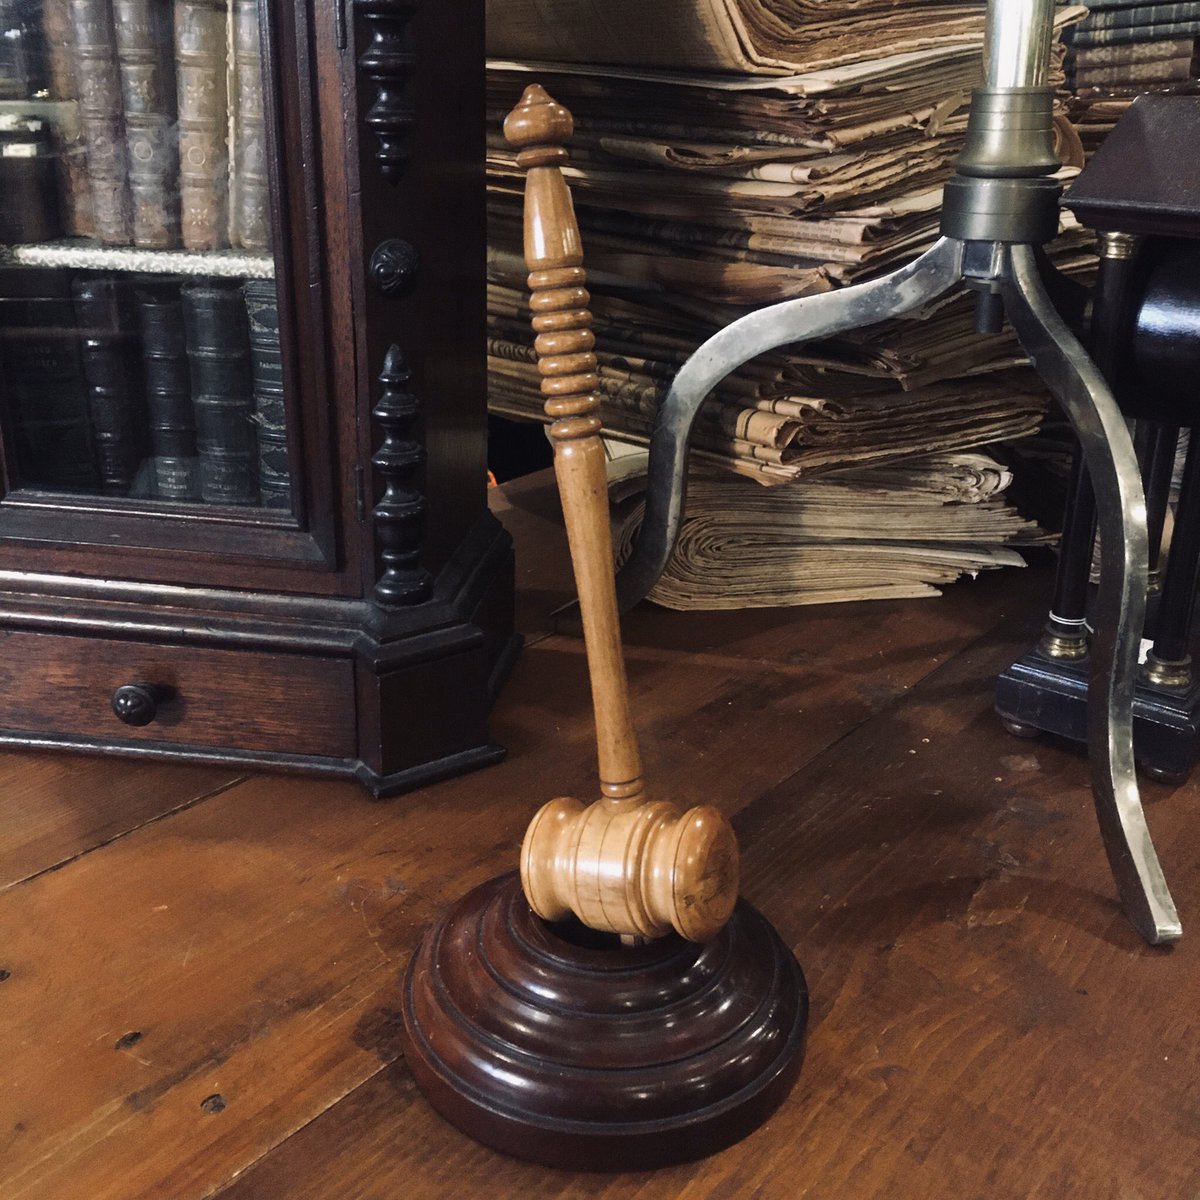 Lecurio ジャッジ ガベル 世期初頭 イギリス 裁判に使っていた古い小槌 ガベルです グリップの装飾がくるくるしていてかわいいですが 打ち付ける為にしっかりとした硬い木で造られています 頭の部品を止めるのにより硬い木釘が使われているのに木工